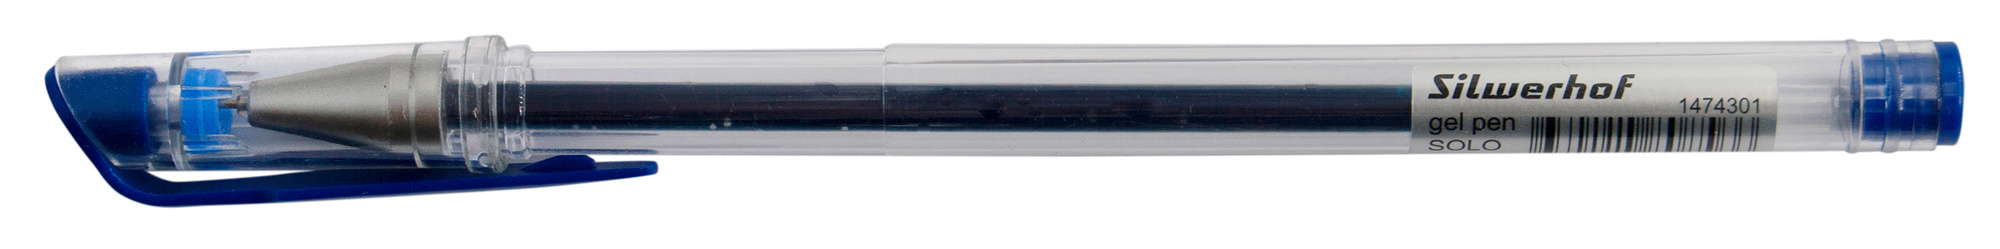 Ручка гелев. Silwerhof Solo d=0.5мм син. черн. кор.карт. сменный стержень игловидный пиш. наконечник линия 0.3мм